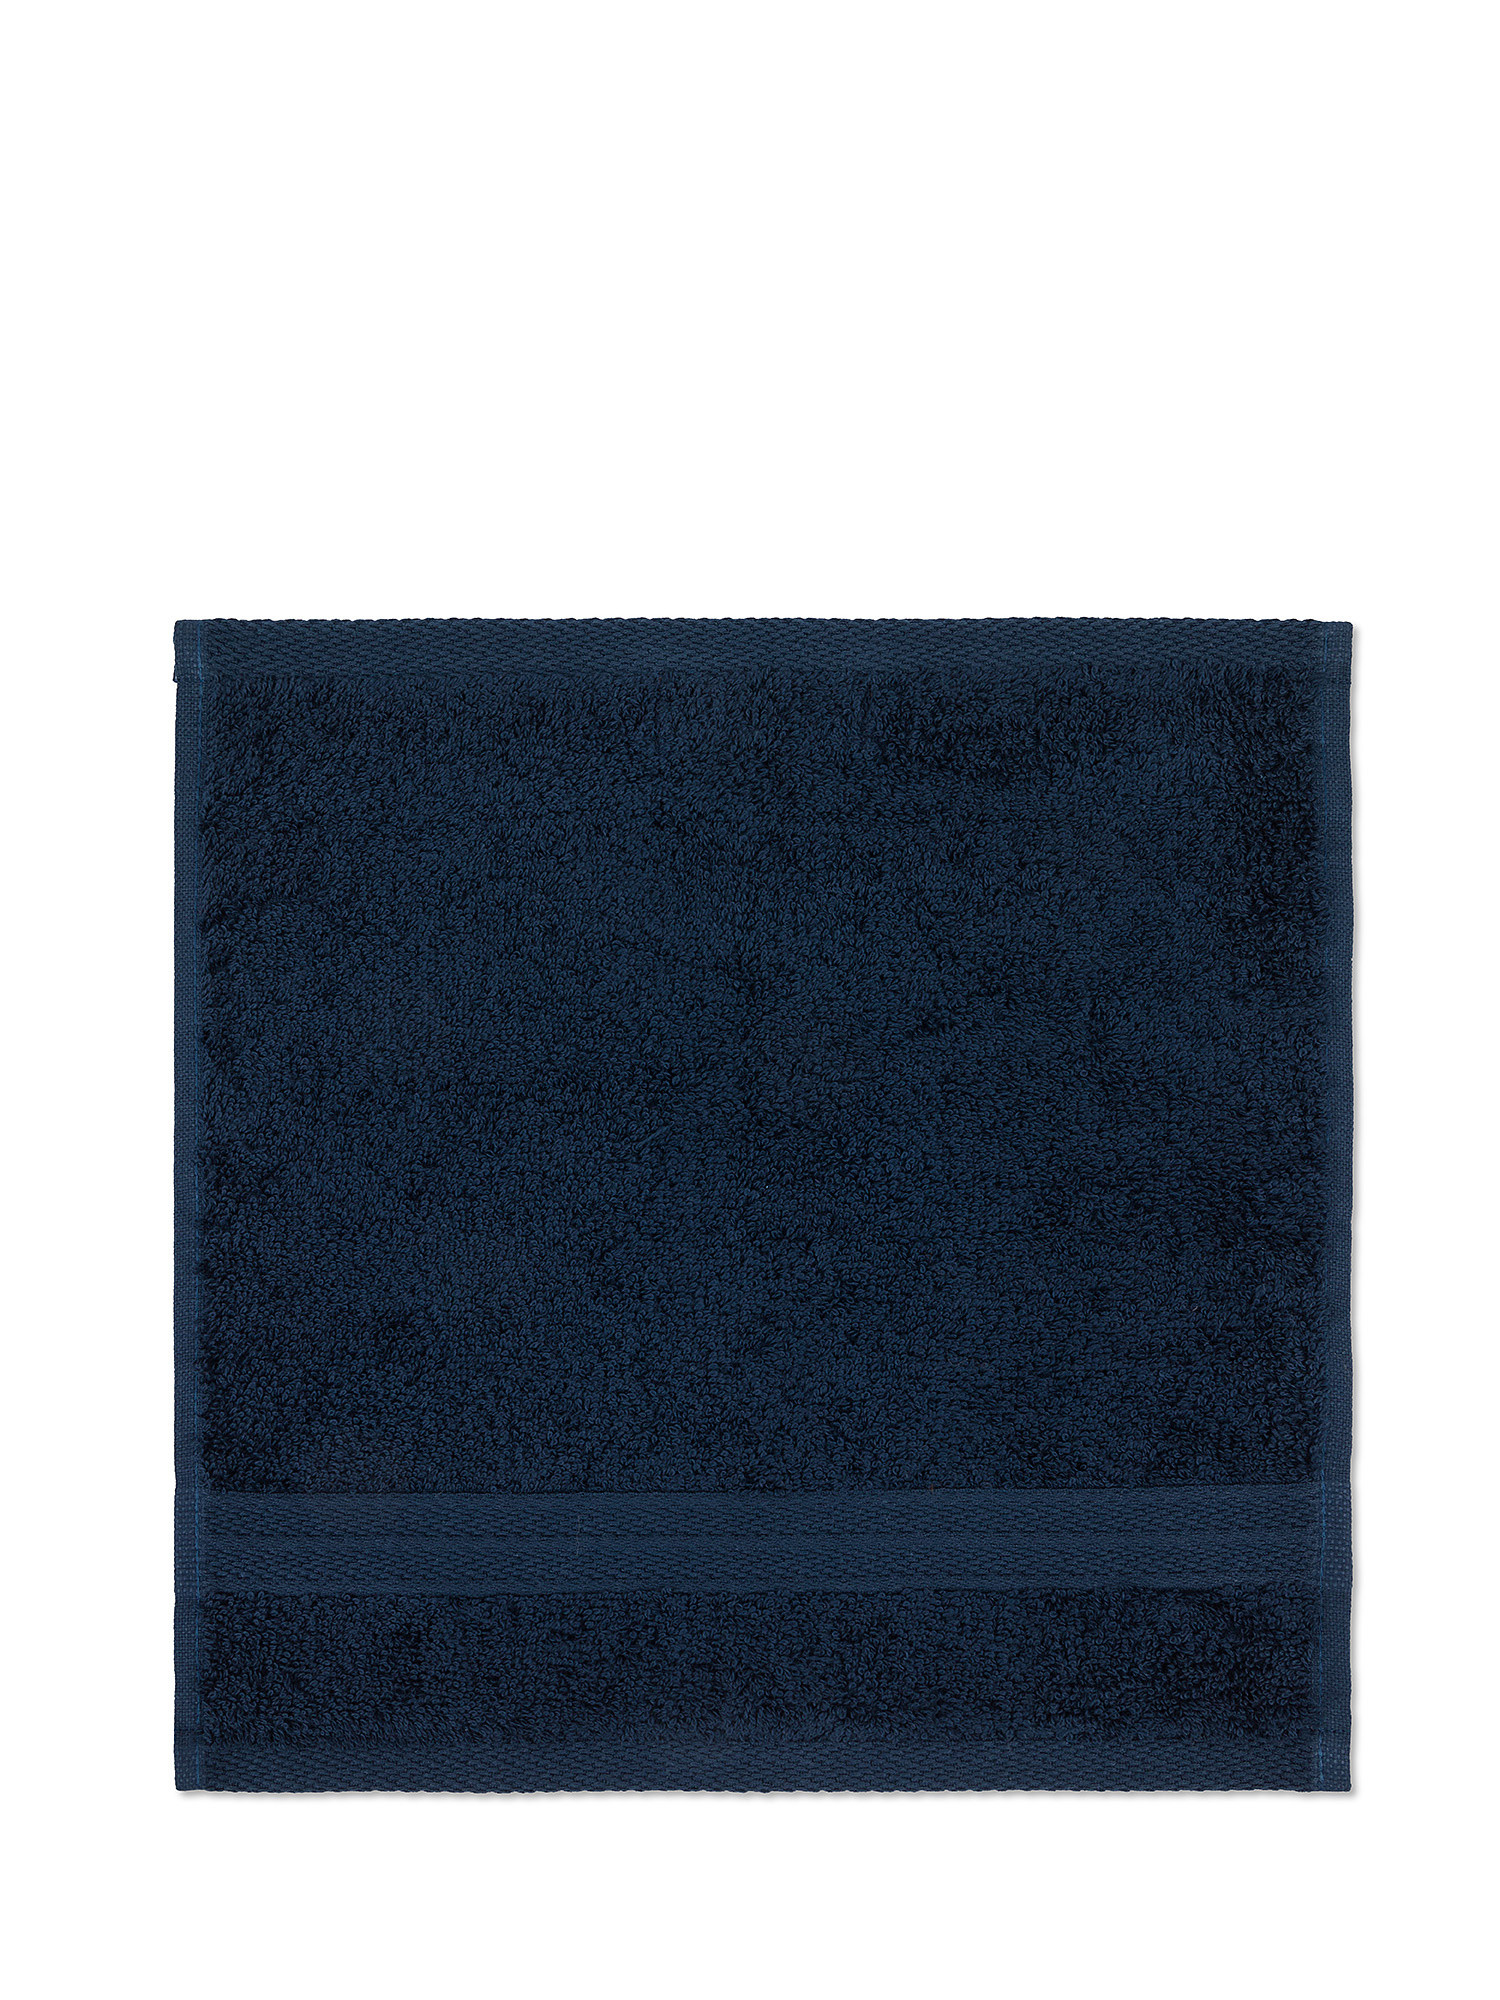 Set of 2 Zefiro solid color 100% cotton washcloths, Dark Blue, large image number 1